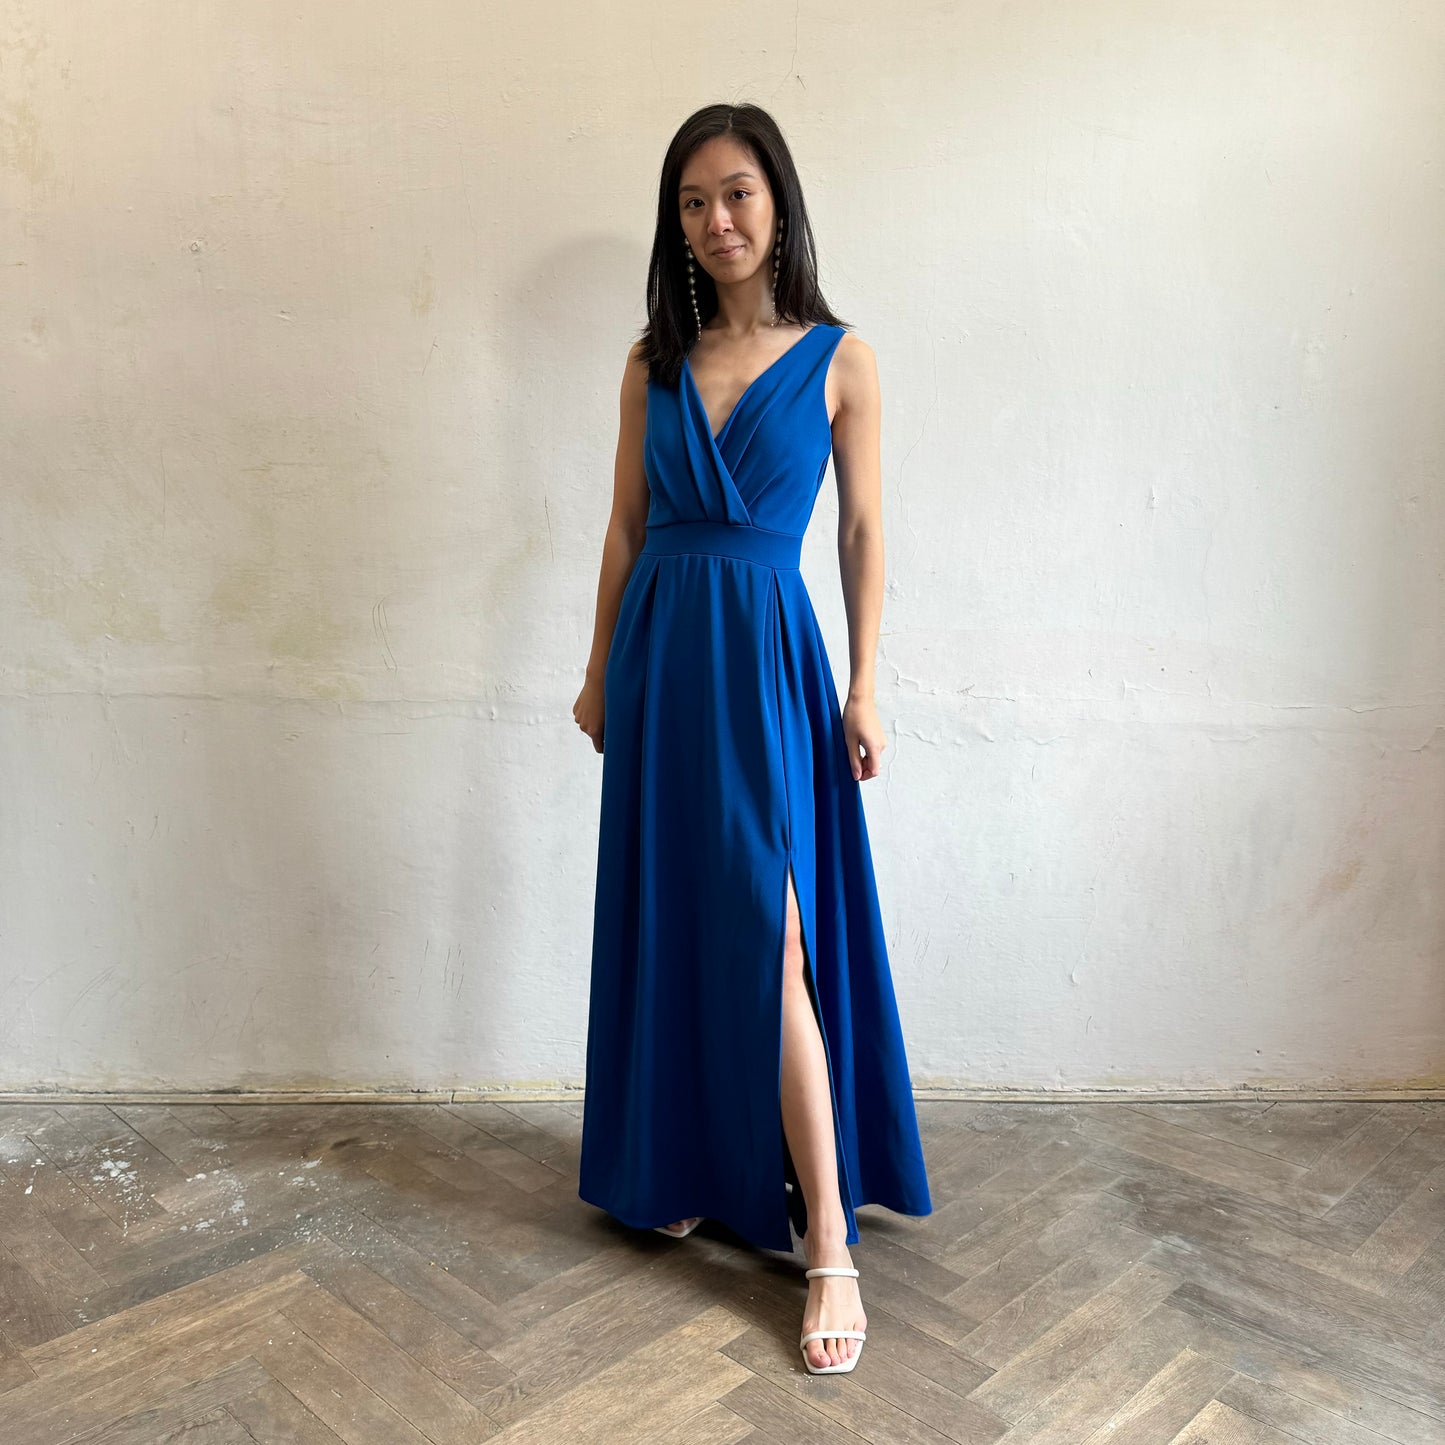 Modelka asijského původu pózující zepředu oblečená ve královsky modrých společenských šatech s rozparkem